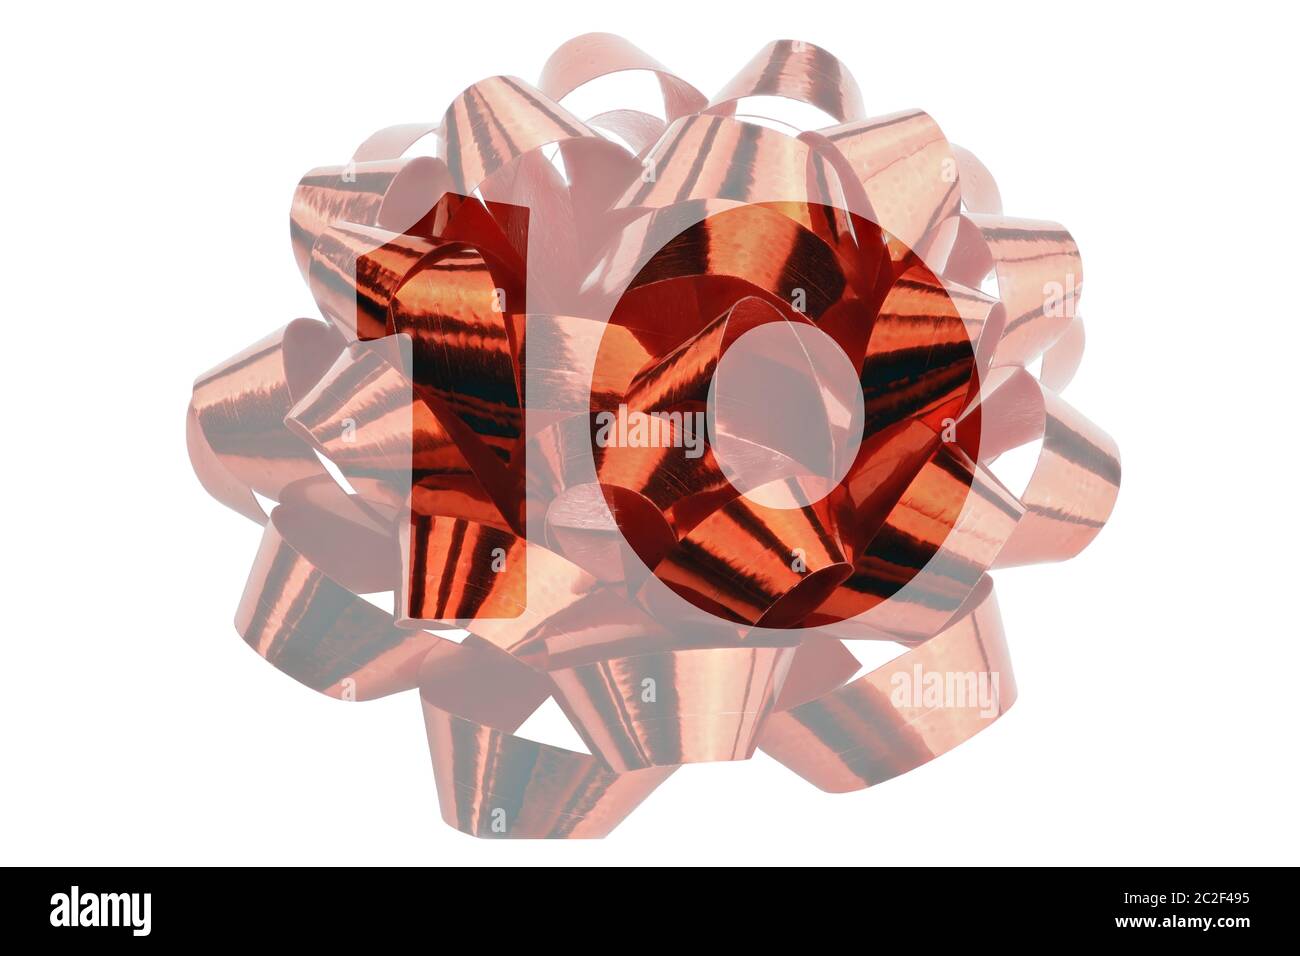 Die Zahl 10 wird symbolisch als hervorgehobene Zahl vor einer Geschenkschleife dargestellt Stockfoto